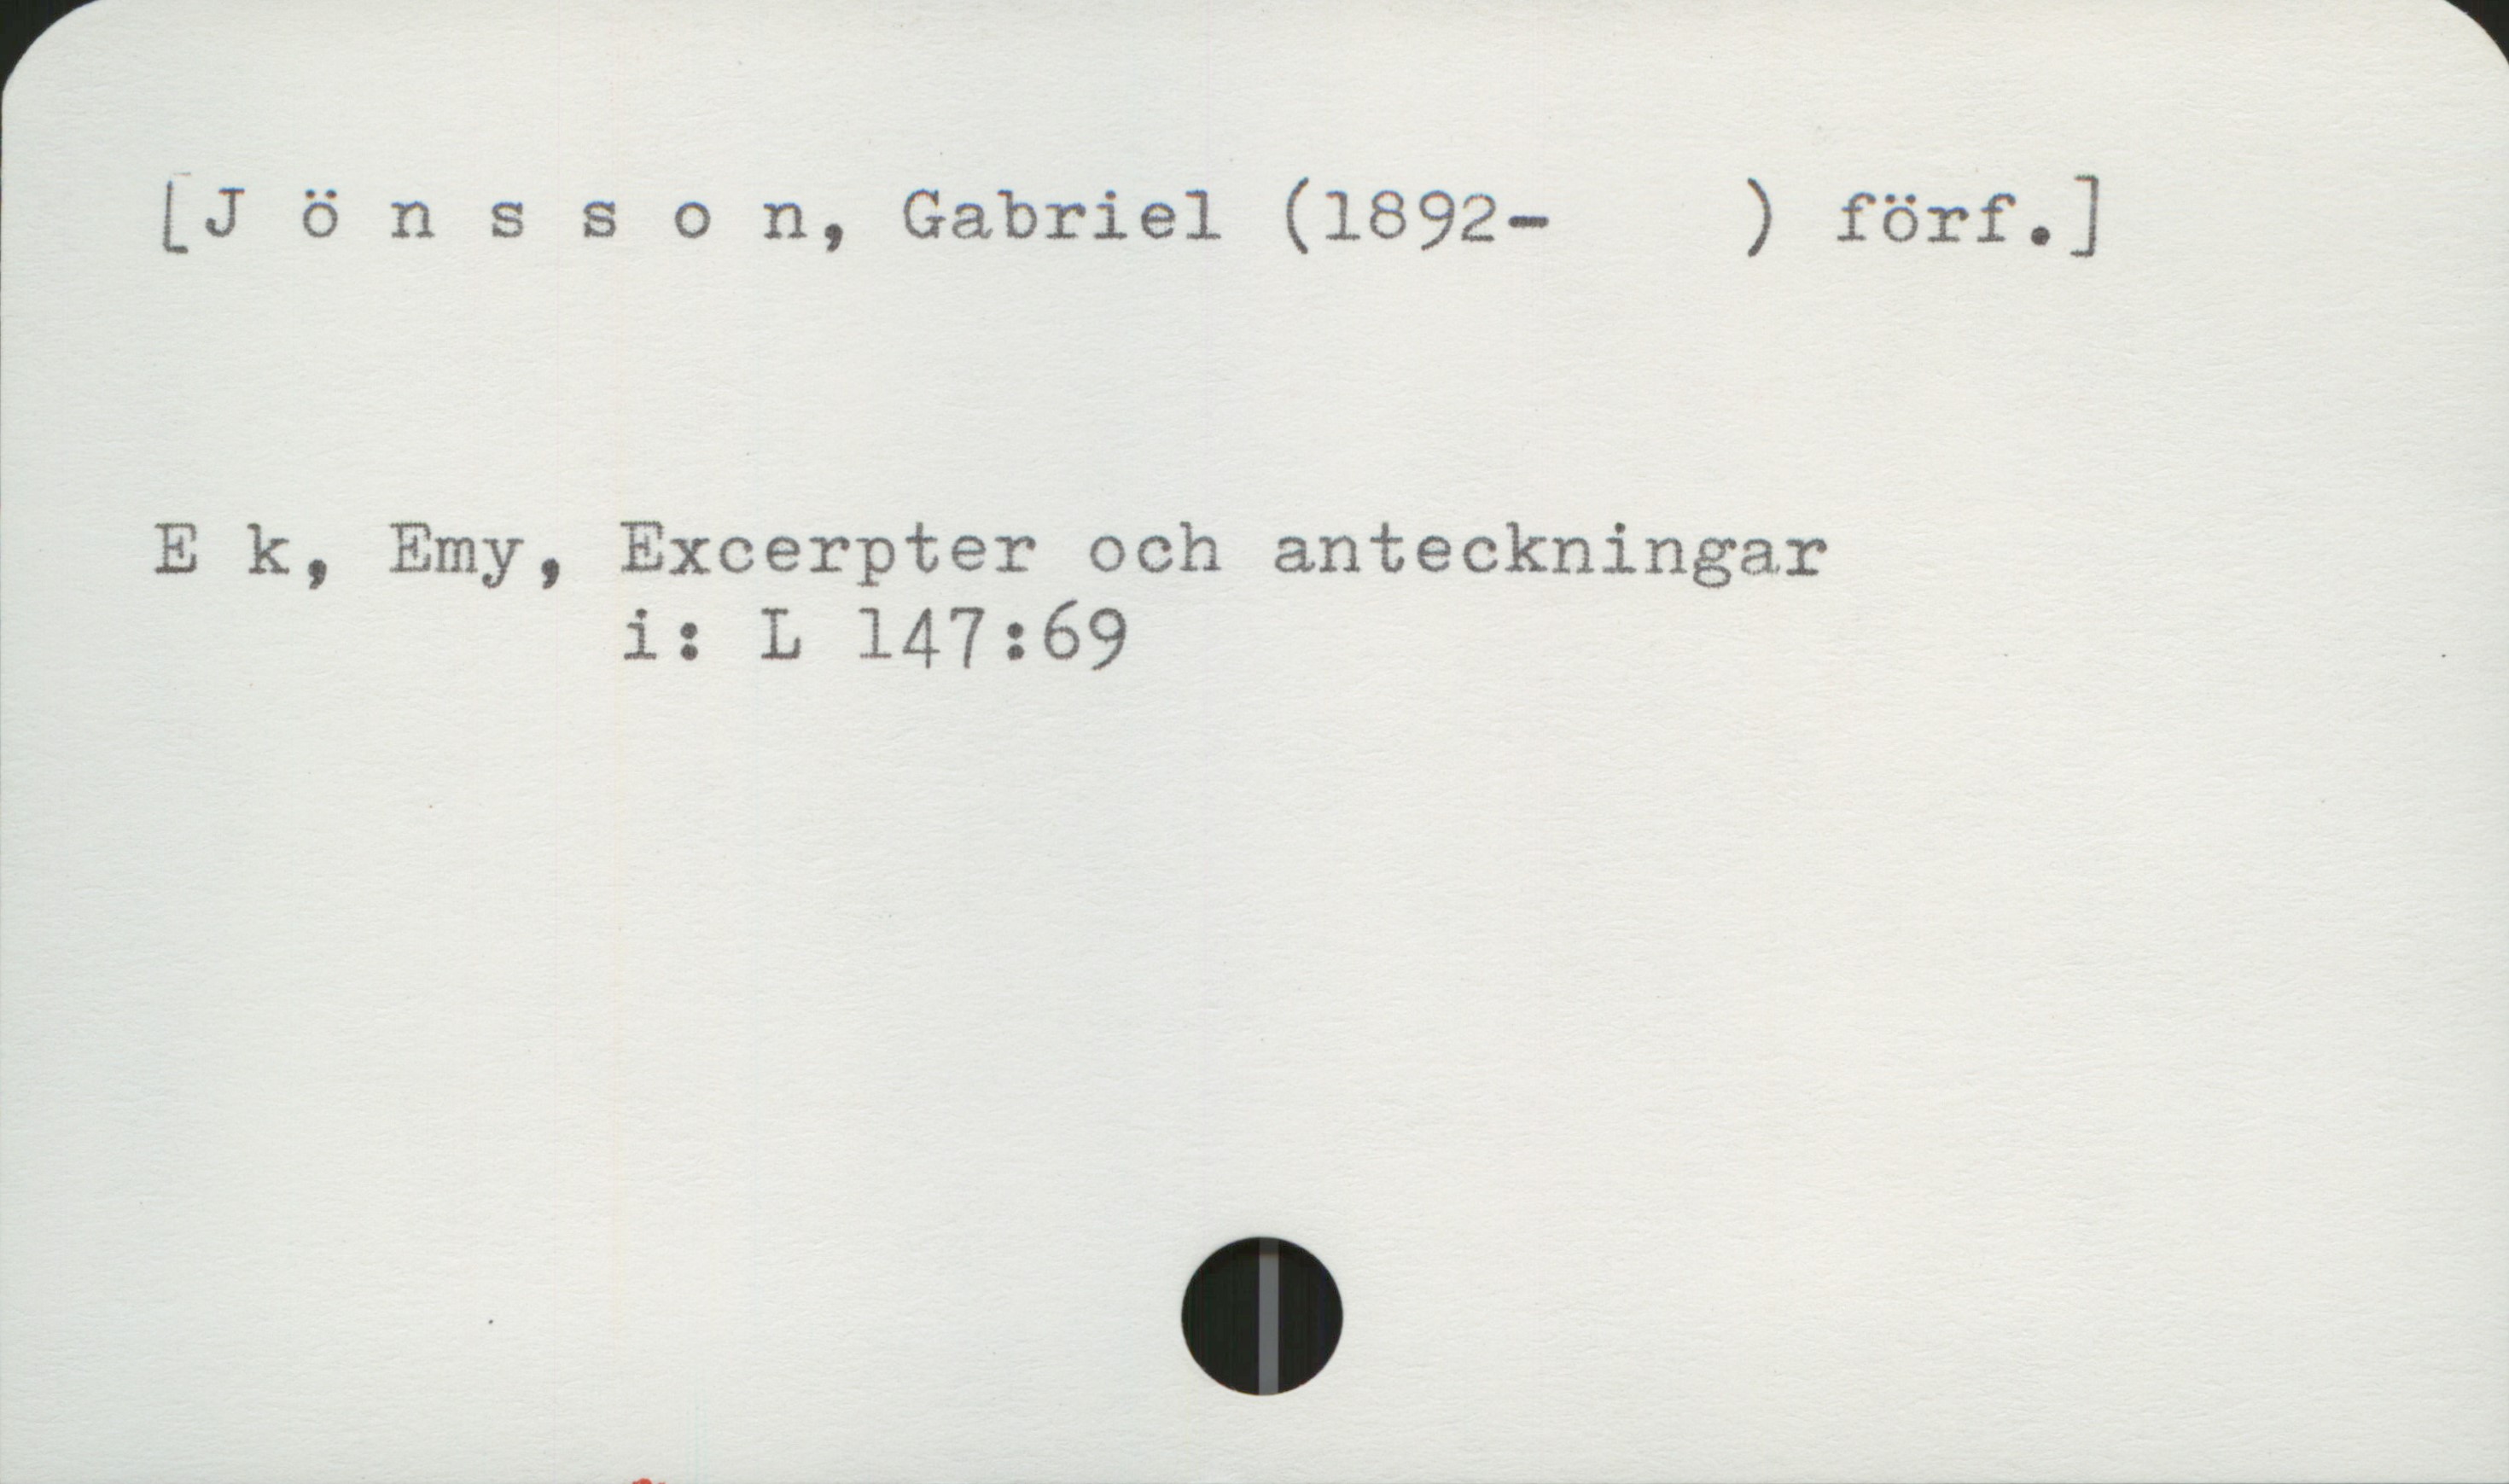 Jönsson, Gabriel (1892-1984) [Jönsson, Gabriel (1892- ) förf. ]

Ek, Emy, Excerpter och anteckningar
                i:   L 147:69